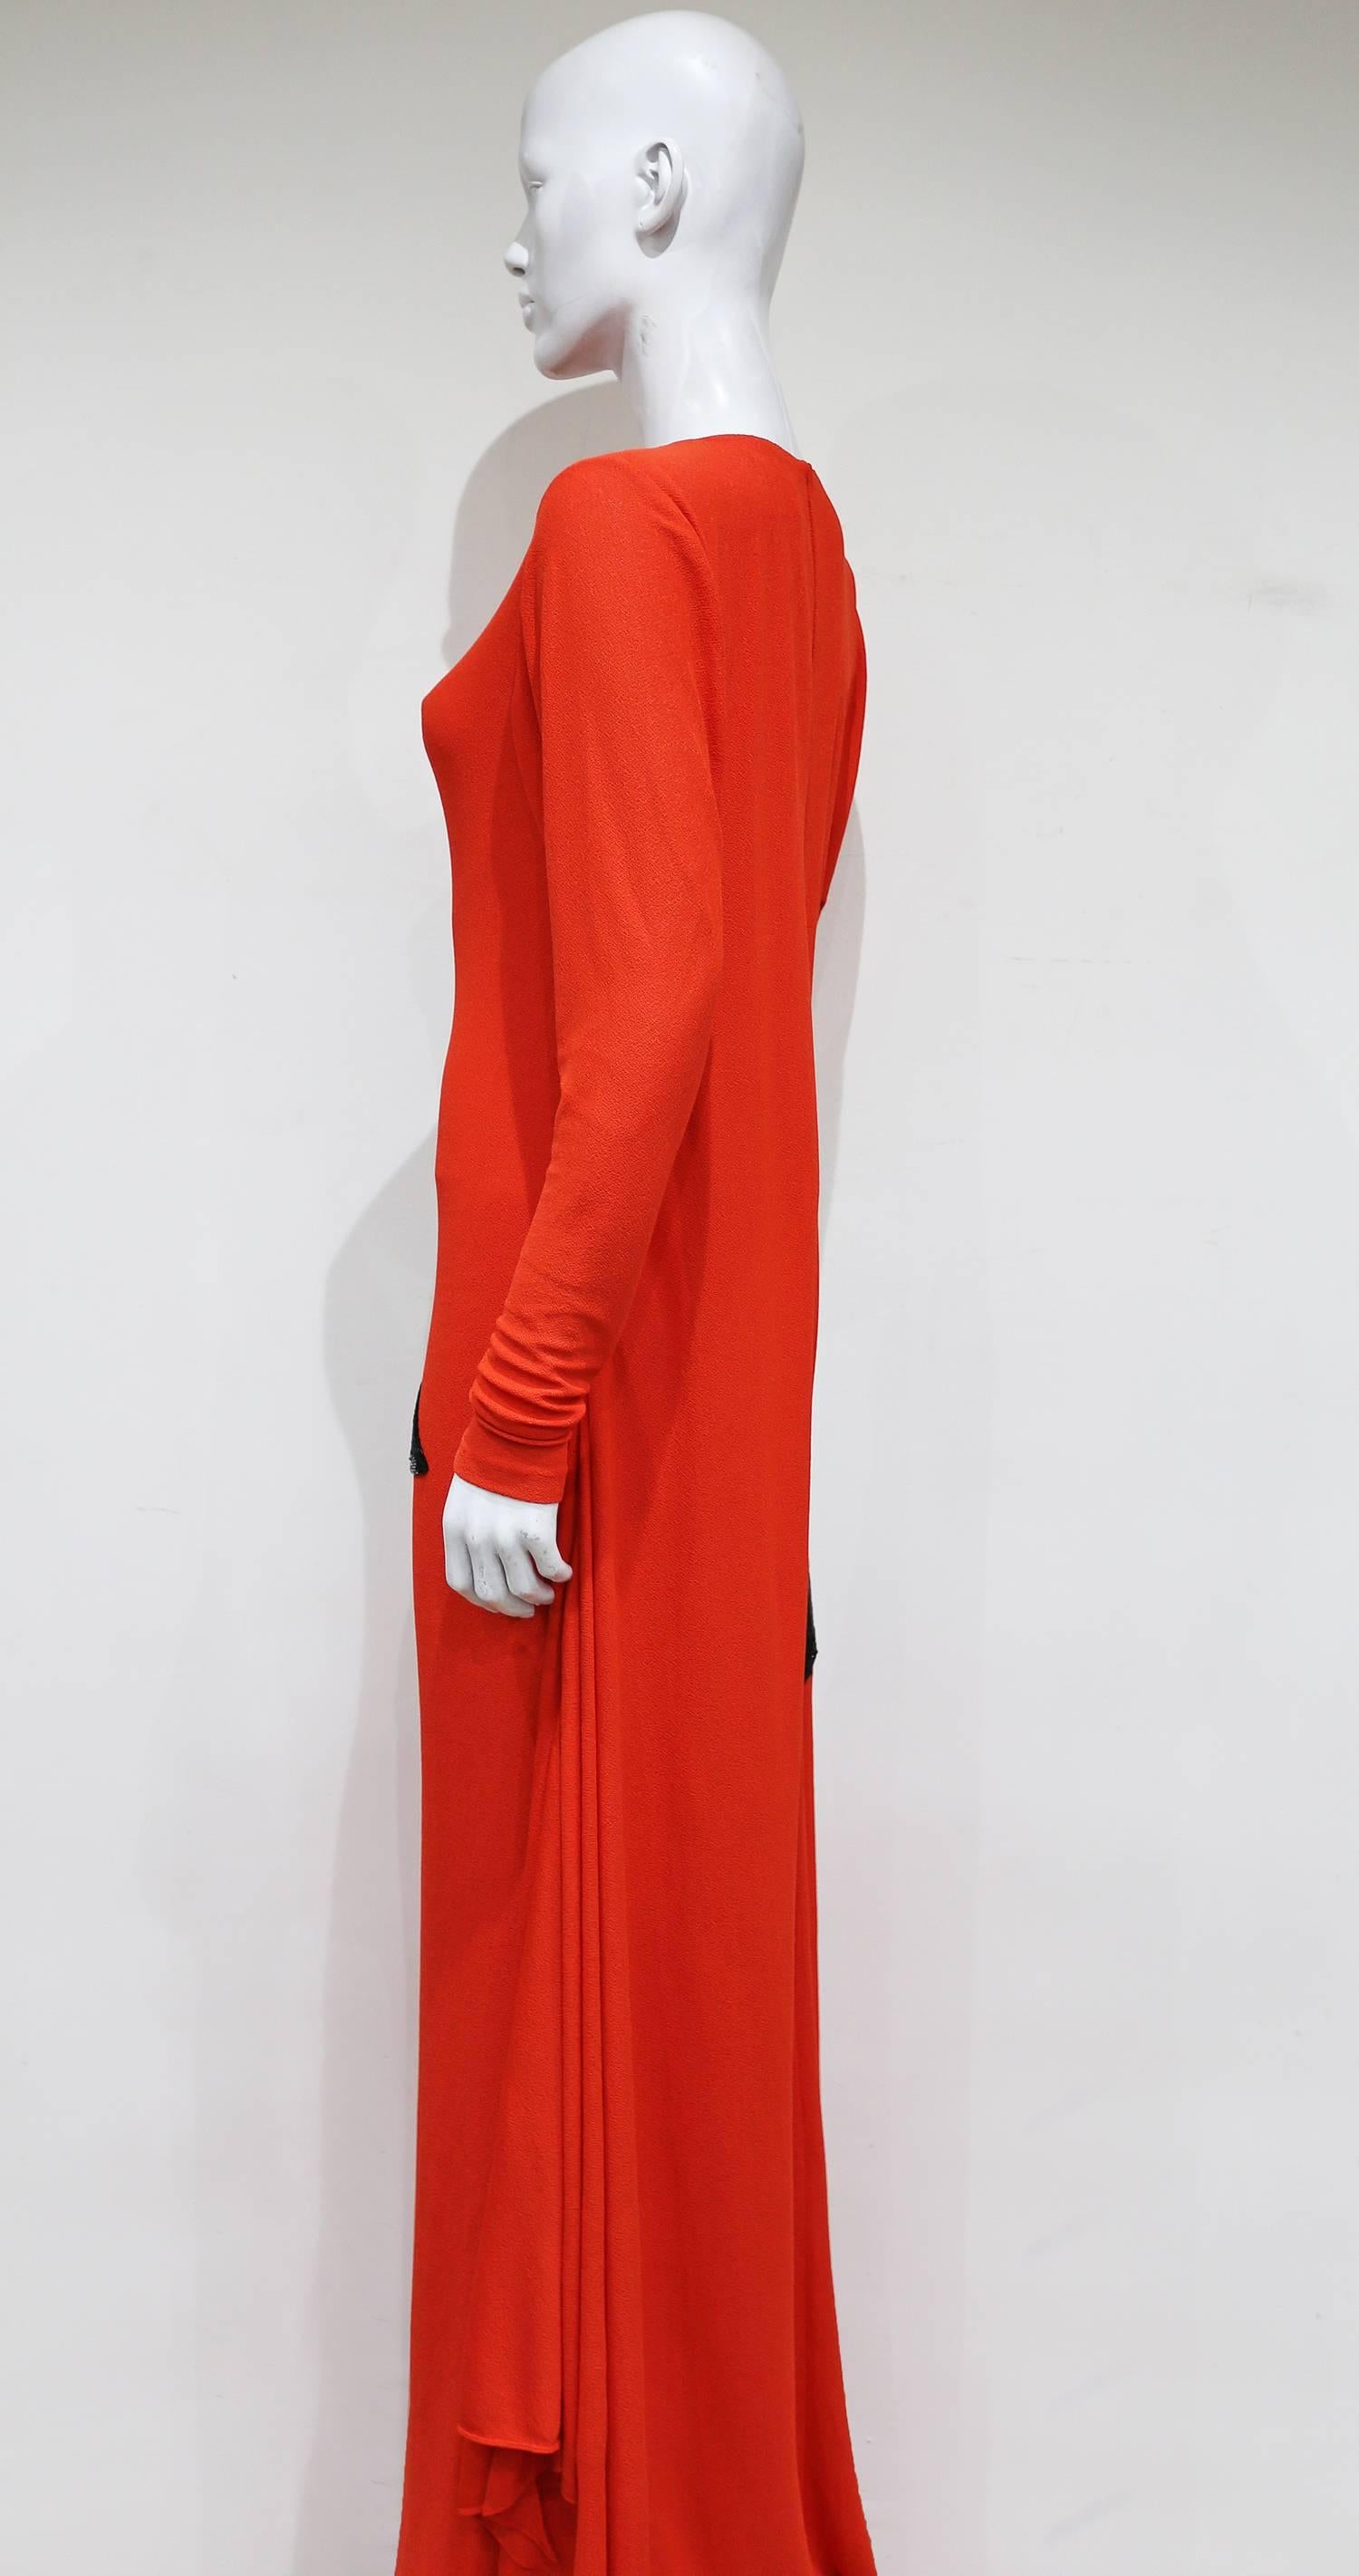 Tom Ford embellished pop art inspired coral evening dress, c. 2013 2